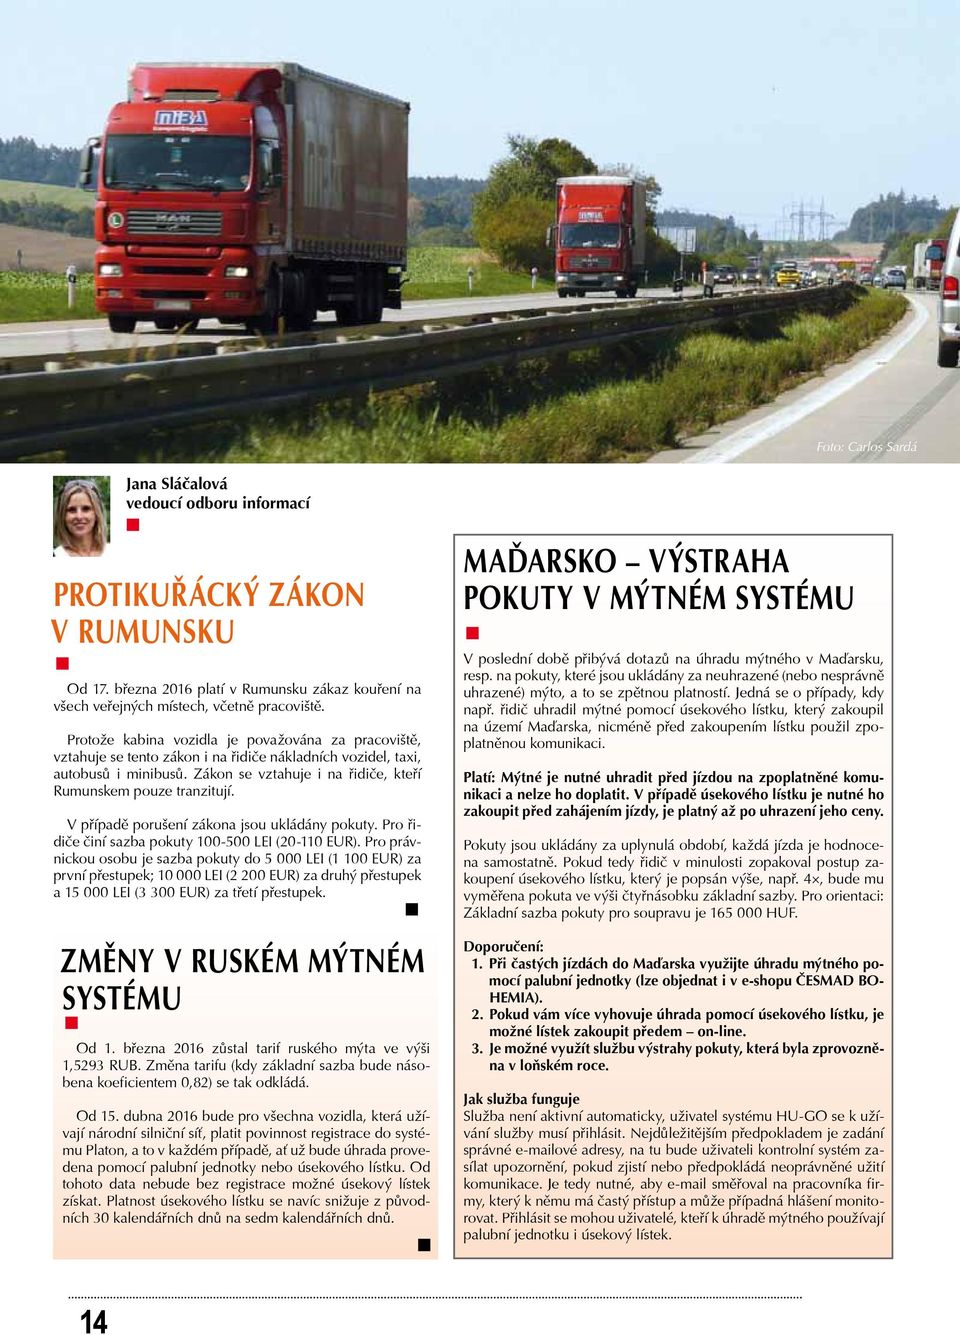 Protože kabina vozidla je považována za pracoviště, vztahuje se tento zákon i na řidiče nákladních vozidel, taxi, autobusů i minibusů. Zákon se vztahuje i na řidiče, kteří Rumunskem pouze tranzitují.